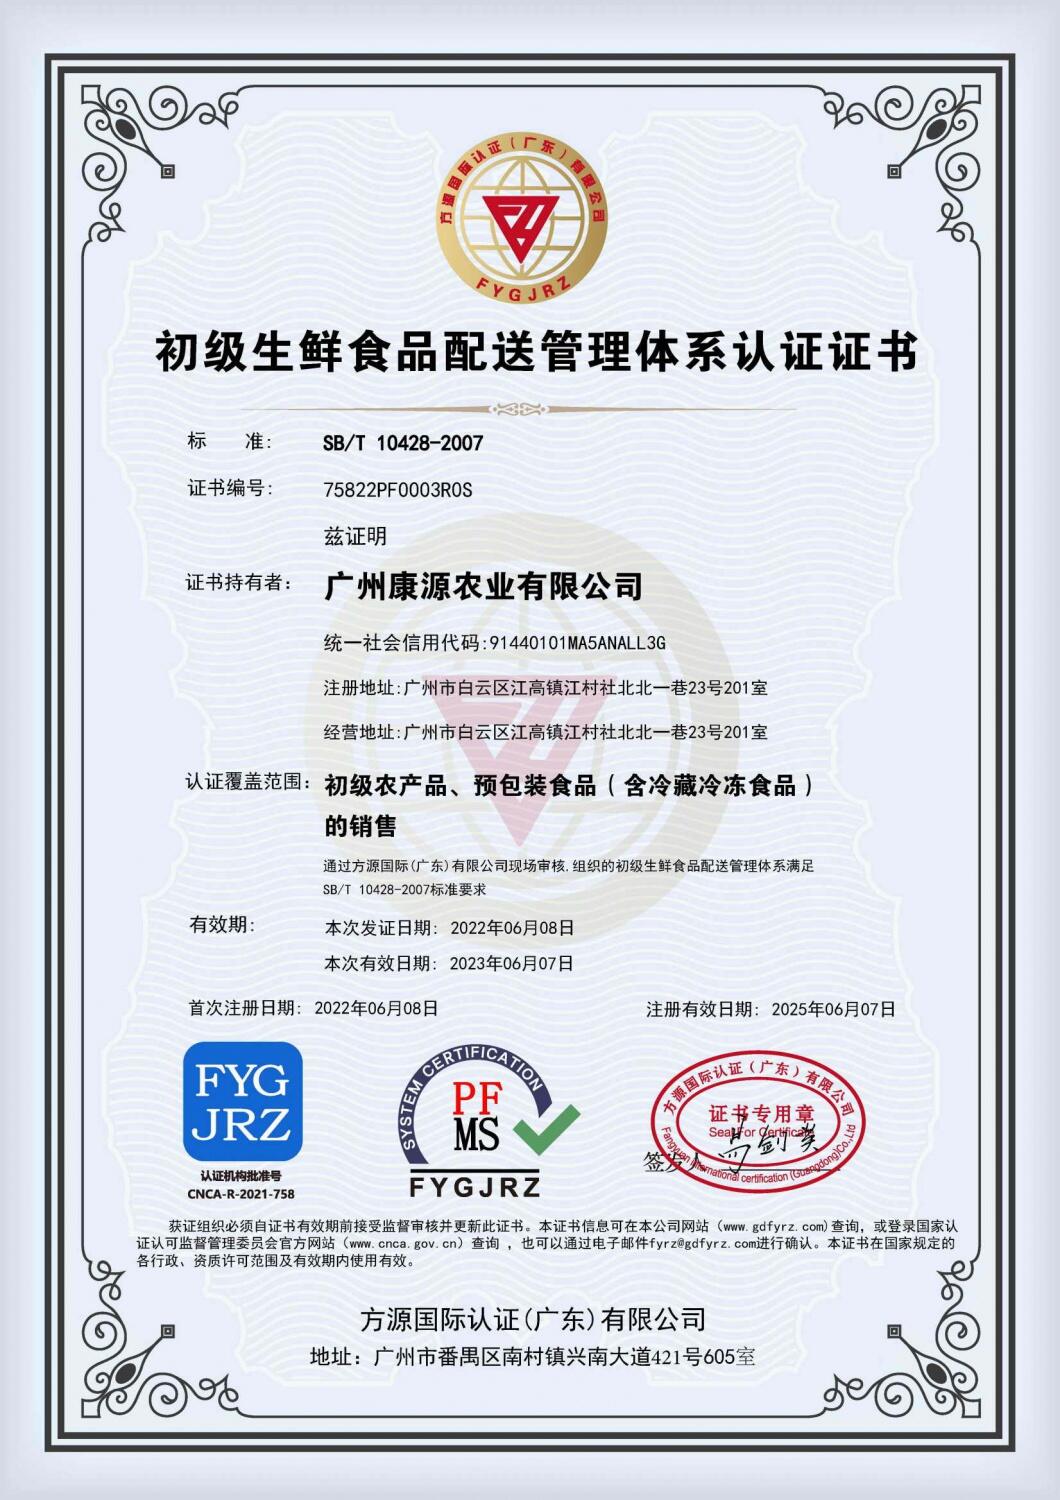 初级生鲜食品配送管理体系认证证书.jpg